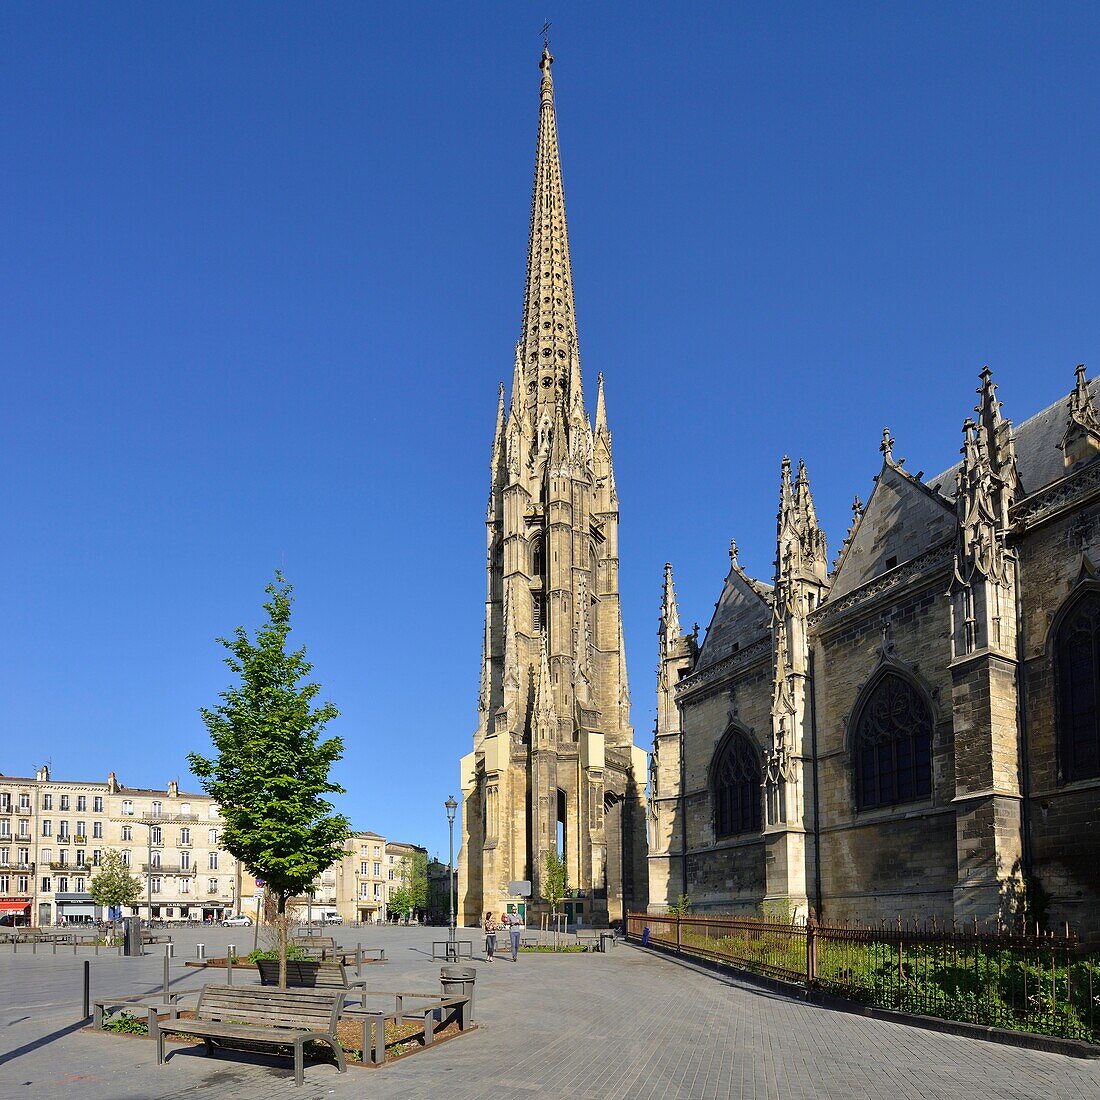 Frankreich,Gironde,Bordeaux,Weltkulturerbe der UNESCO,Stadtteil Saint Michel,Platz Meynard,Basilika Saint Michel, erbaut zwischen dem 14. und 16. Jahrhundert im gotischen Stil mit einem 114 m hohen Turm